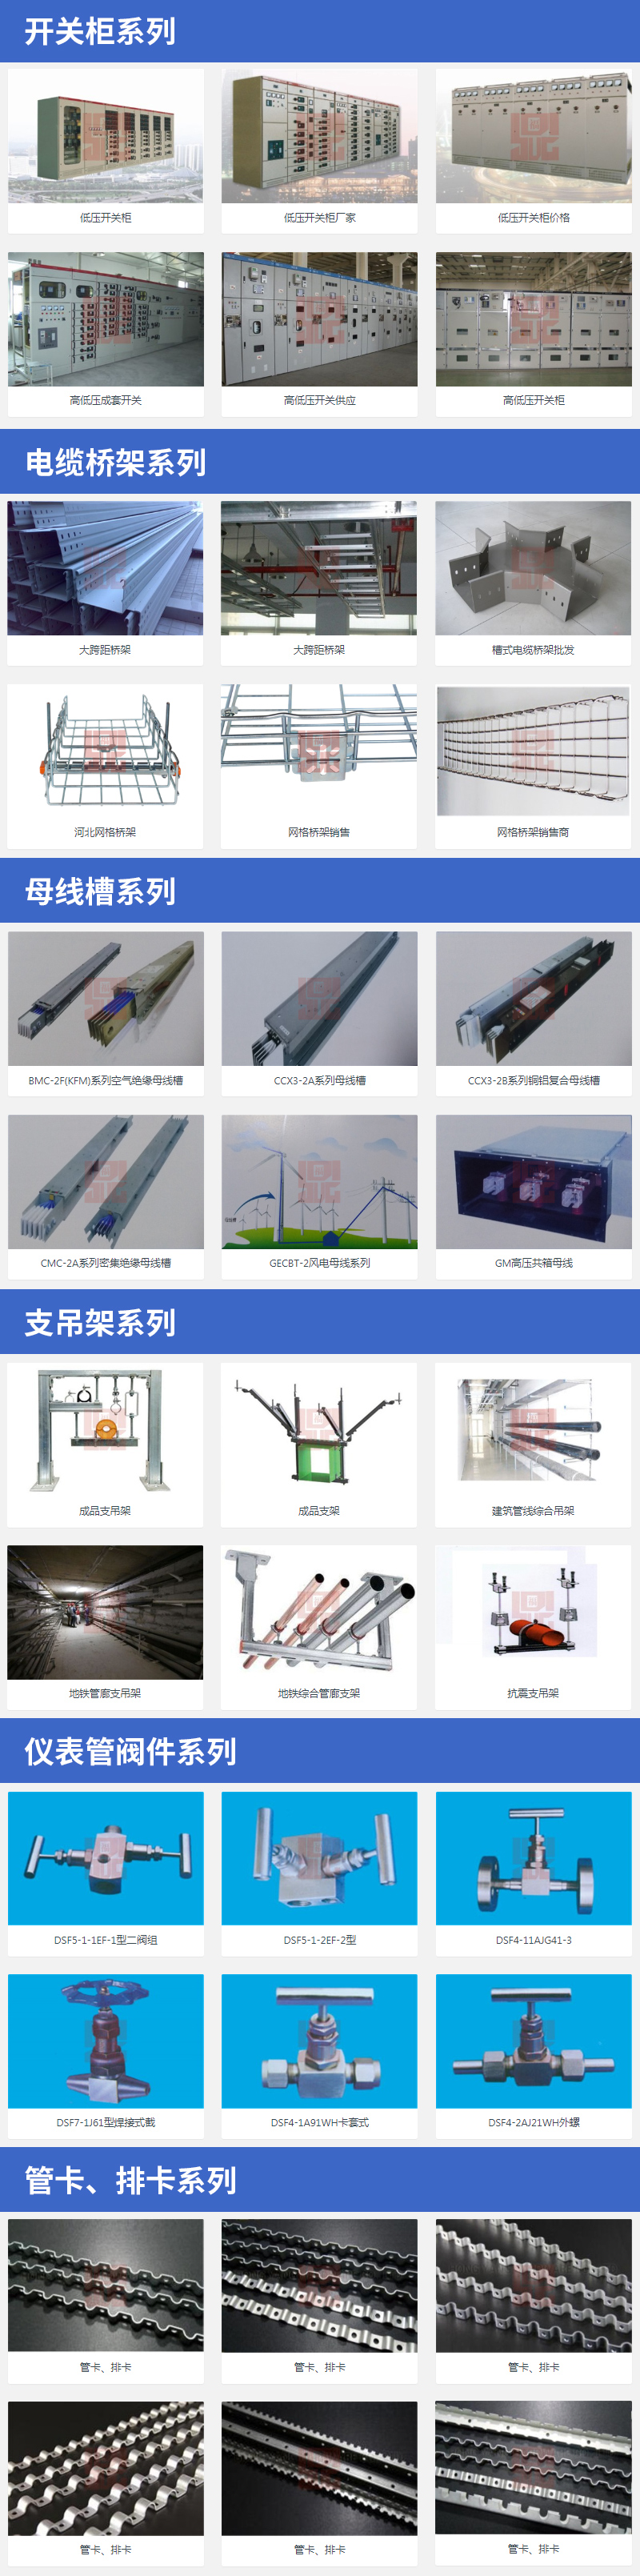 江苏福鼎成为安装通金牌供应商，提供高品质电力设备